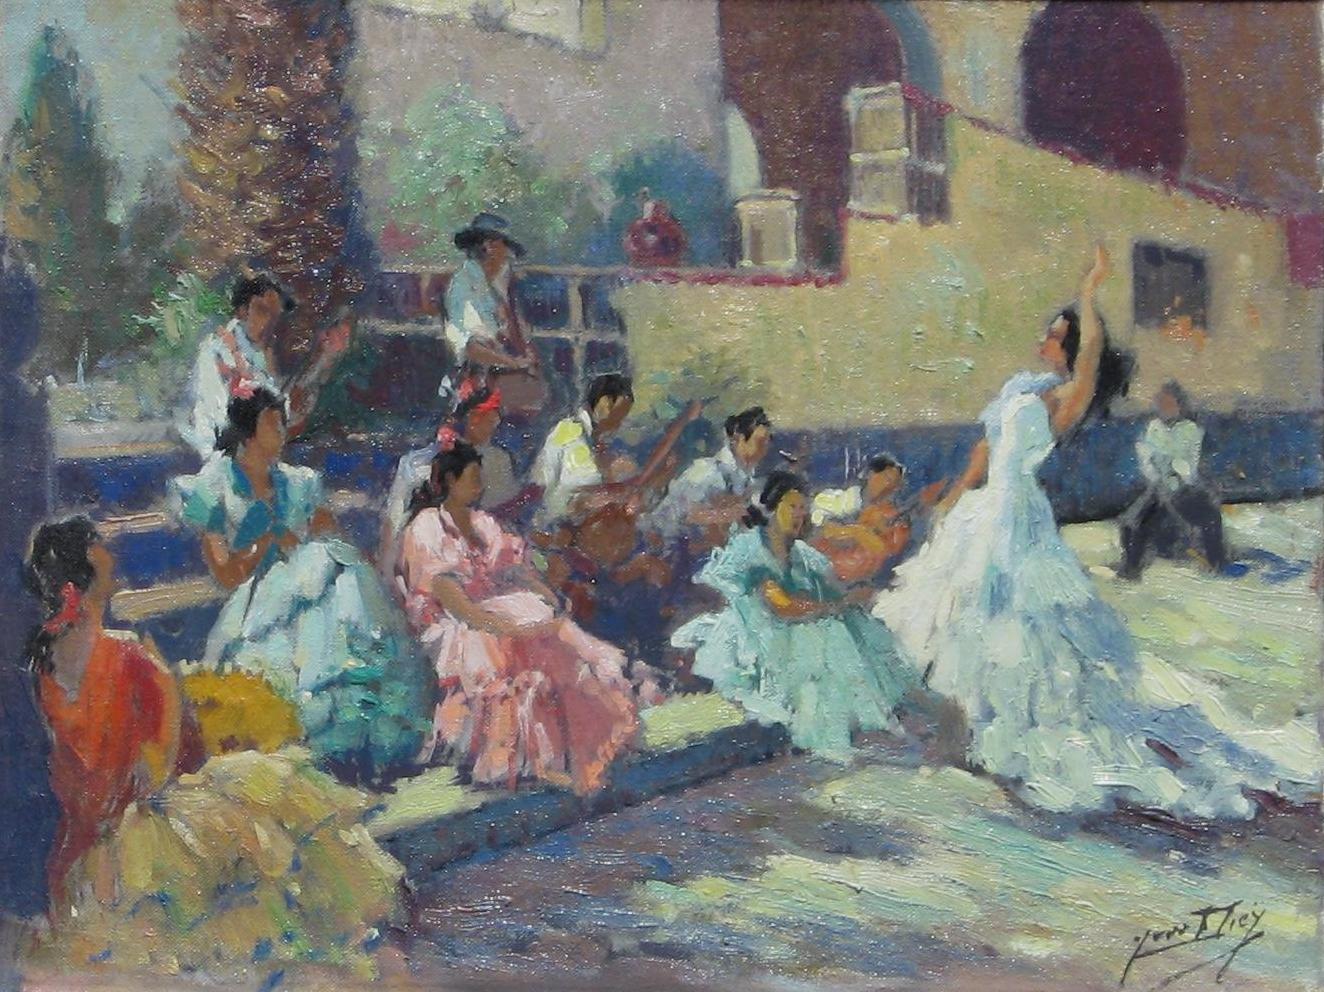 Original Öl auf Leinwand des französischen Künstlers Yves Diey (1892-1984).  
Signiert unten rechts. In ausgezeichnetem Zustand. 
Das Thema zeigt Flamenco-Tänzer.
Maße: 11